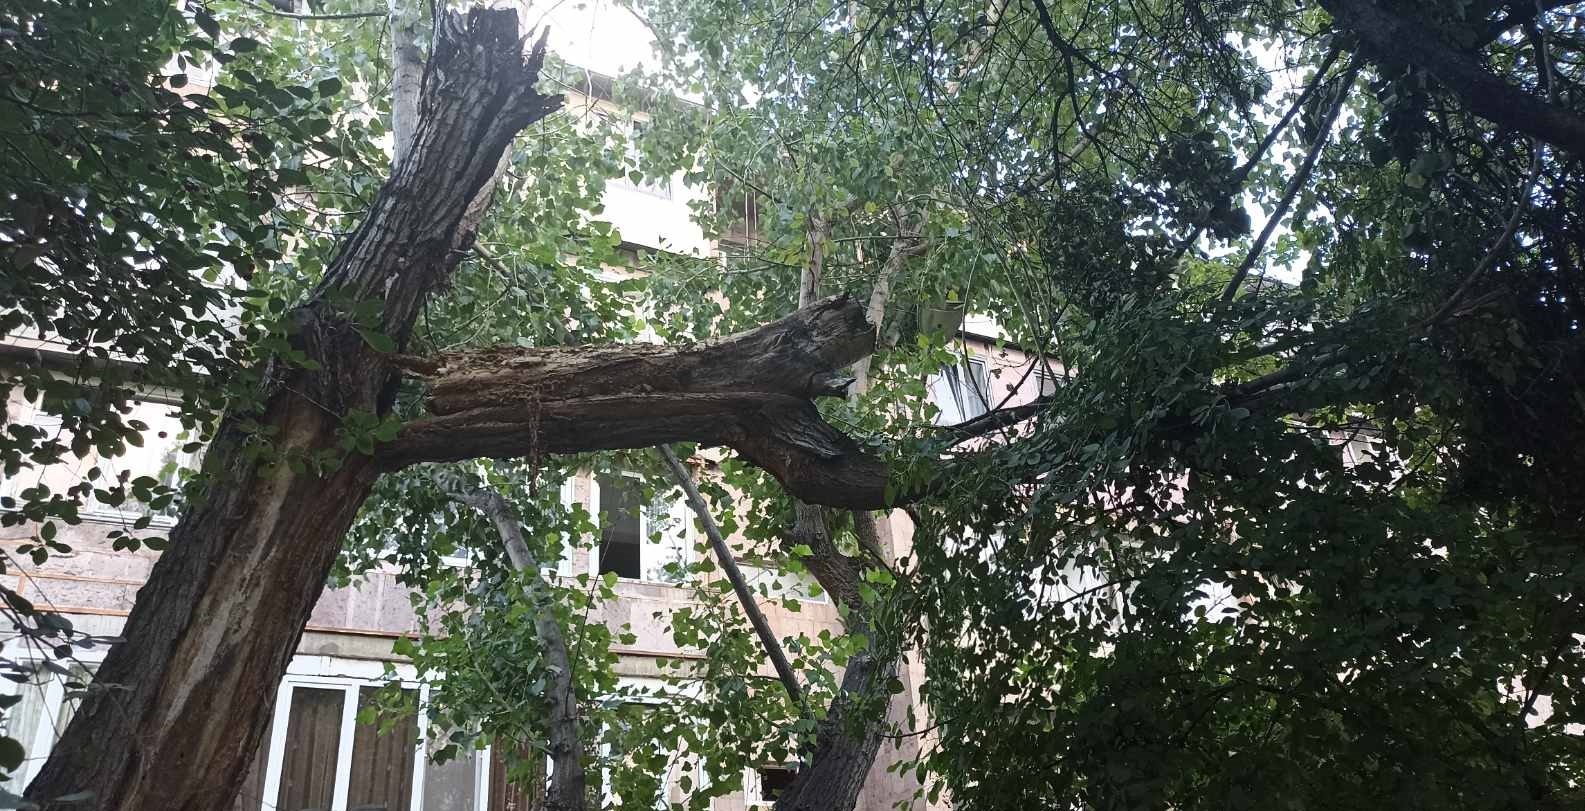 Երևանում քամու հետևանքով կոտրվել են ծառեր և վնասվել թիթեղներ